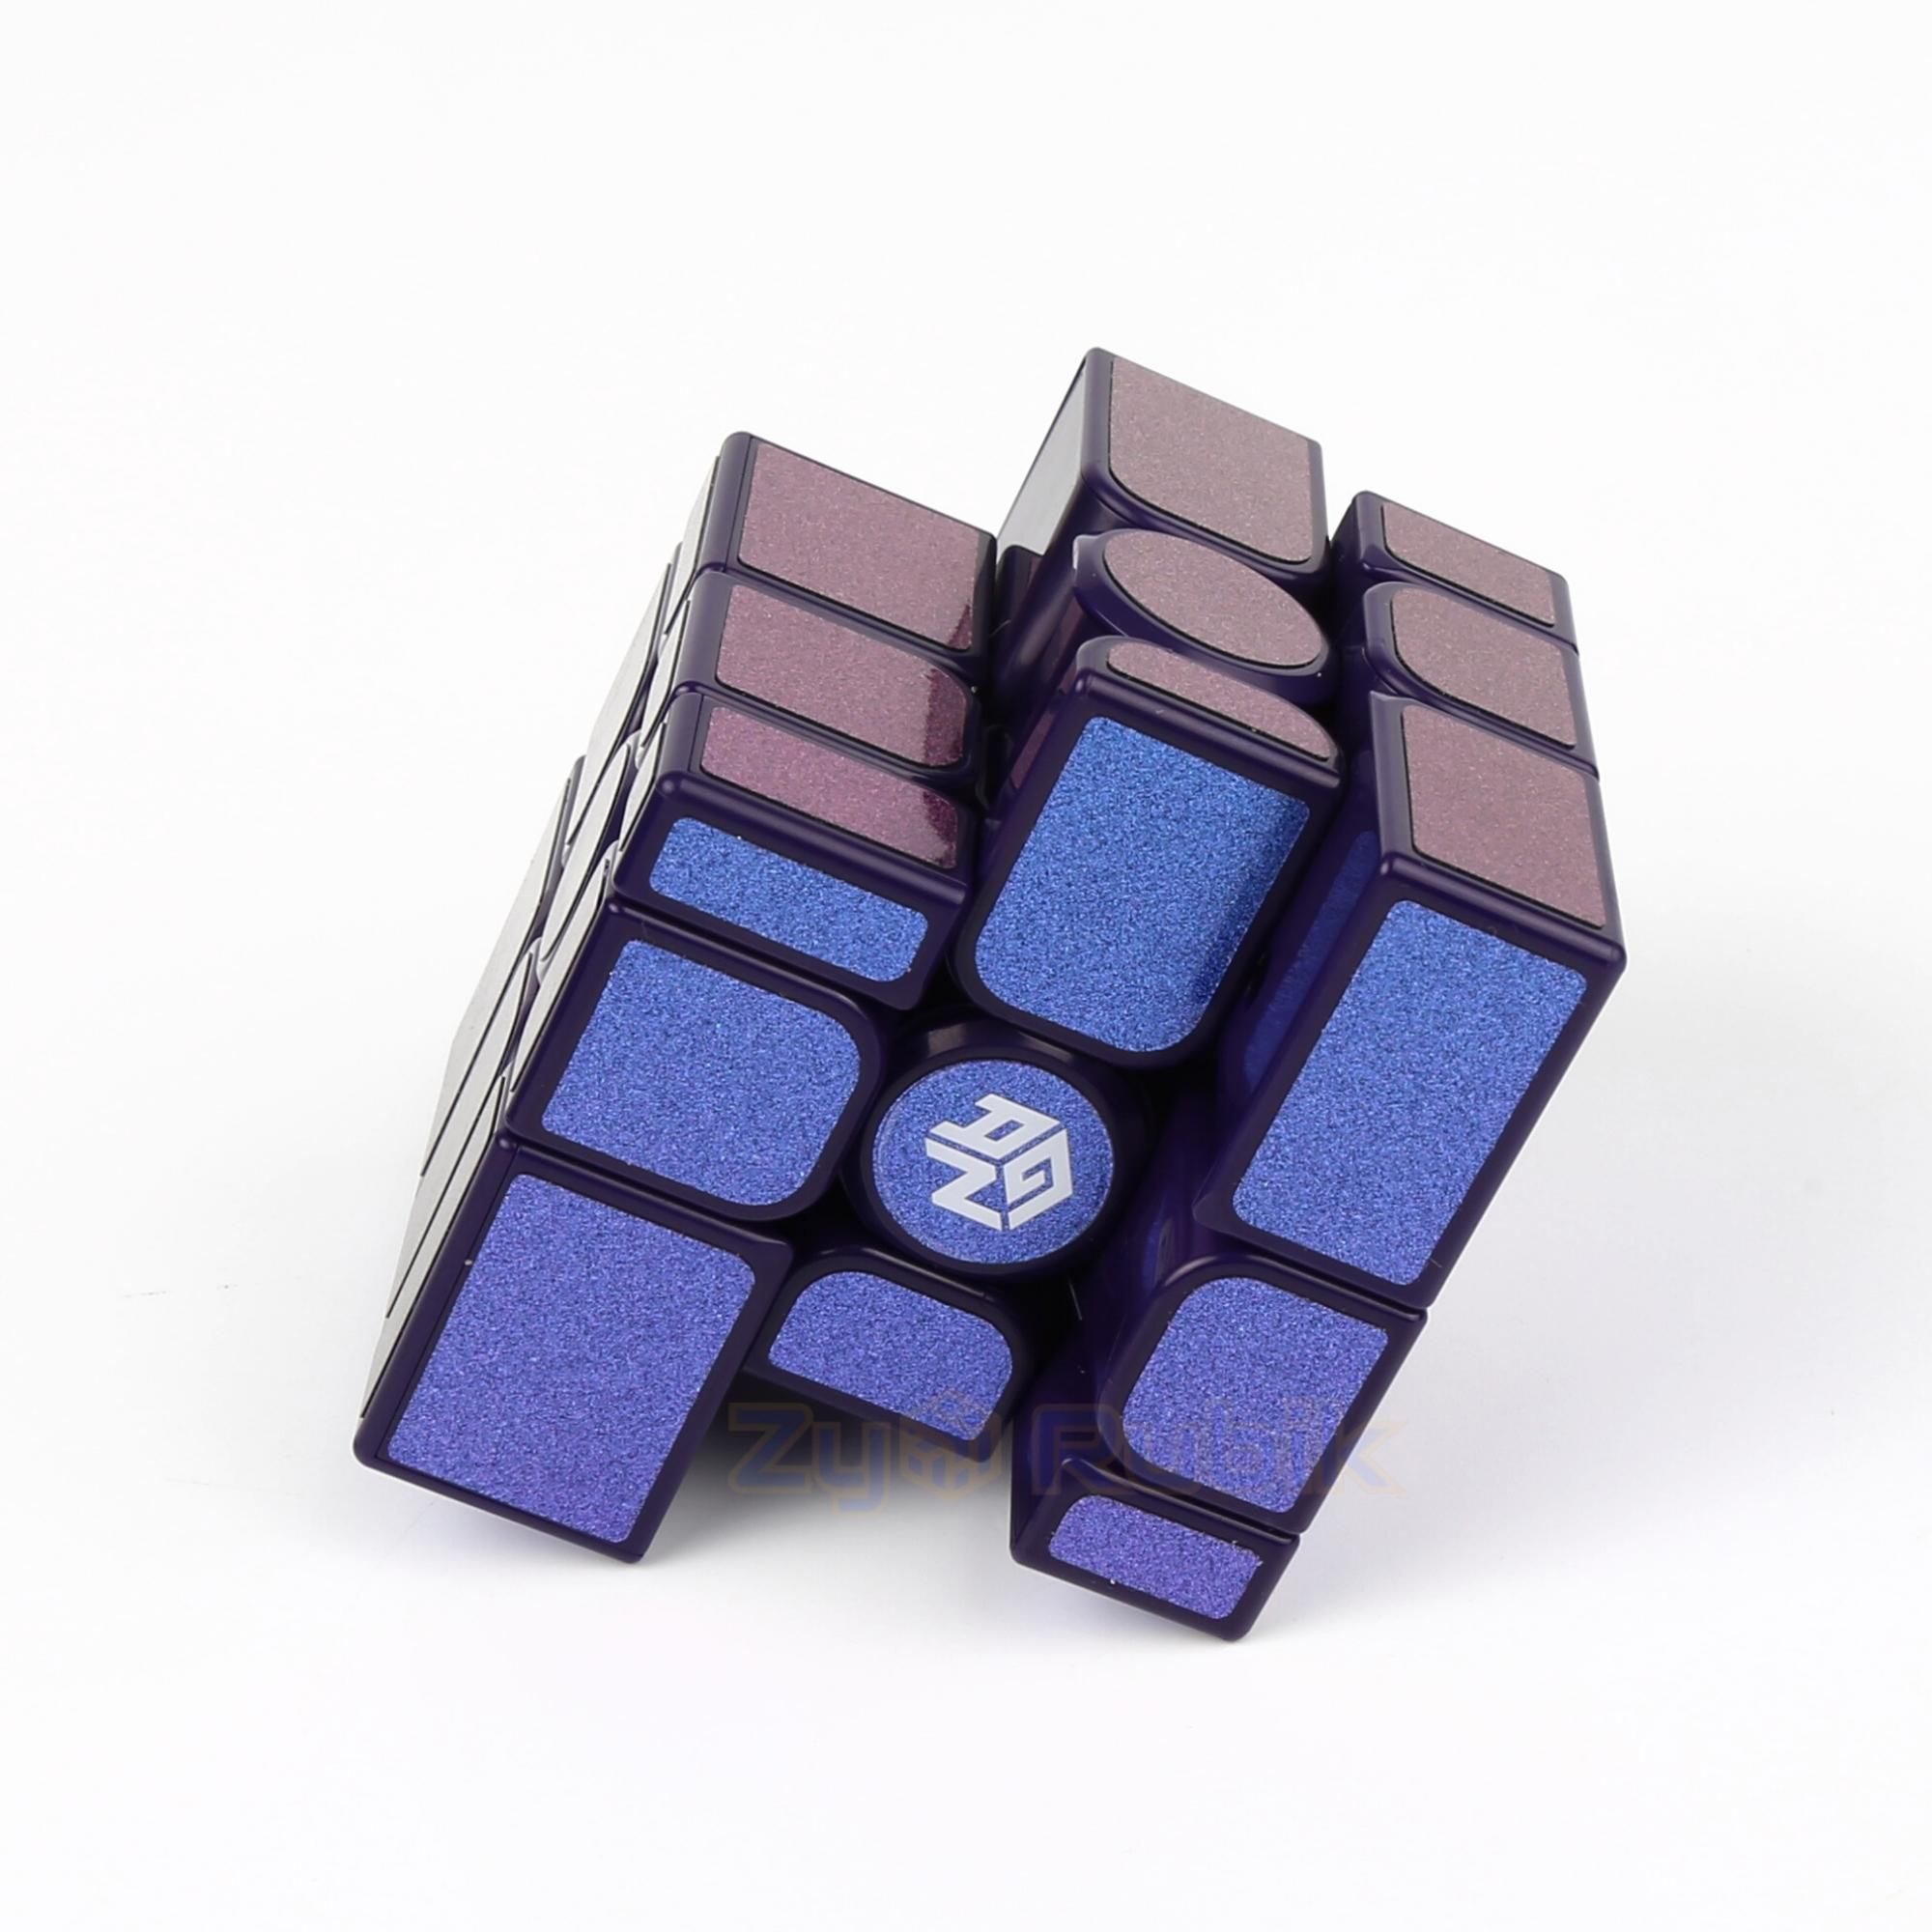  Rubik 3x3 gương - Gan Mirror - Đồ Chơi Trí Tuệ Biến Thể Cao Cấp ( Hãng Mod Nam Châm ) - Zyo Toys 